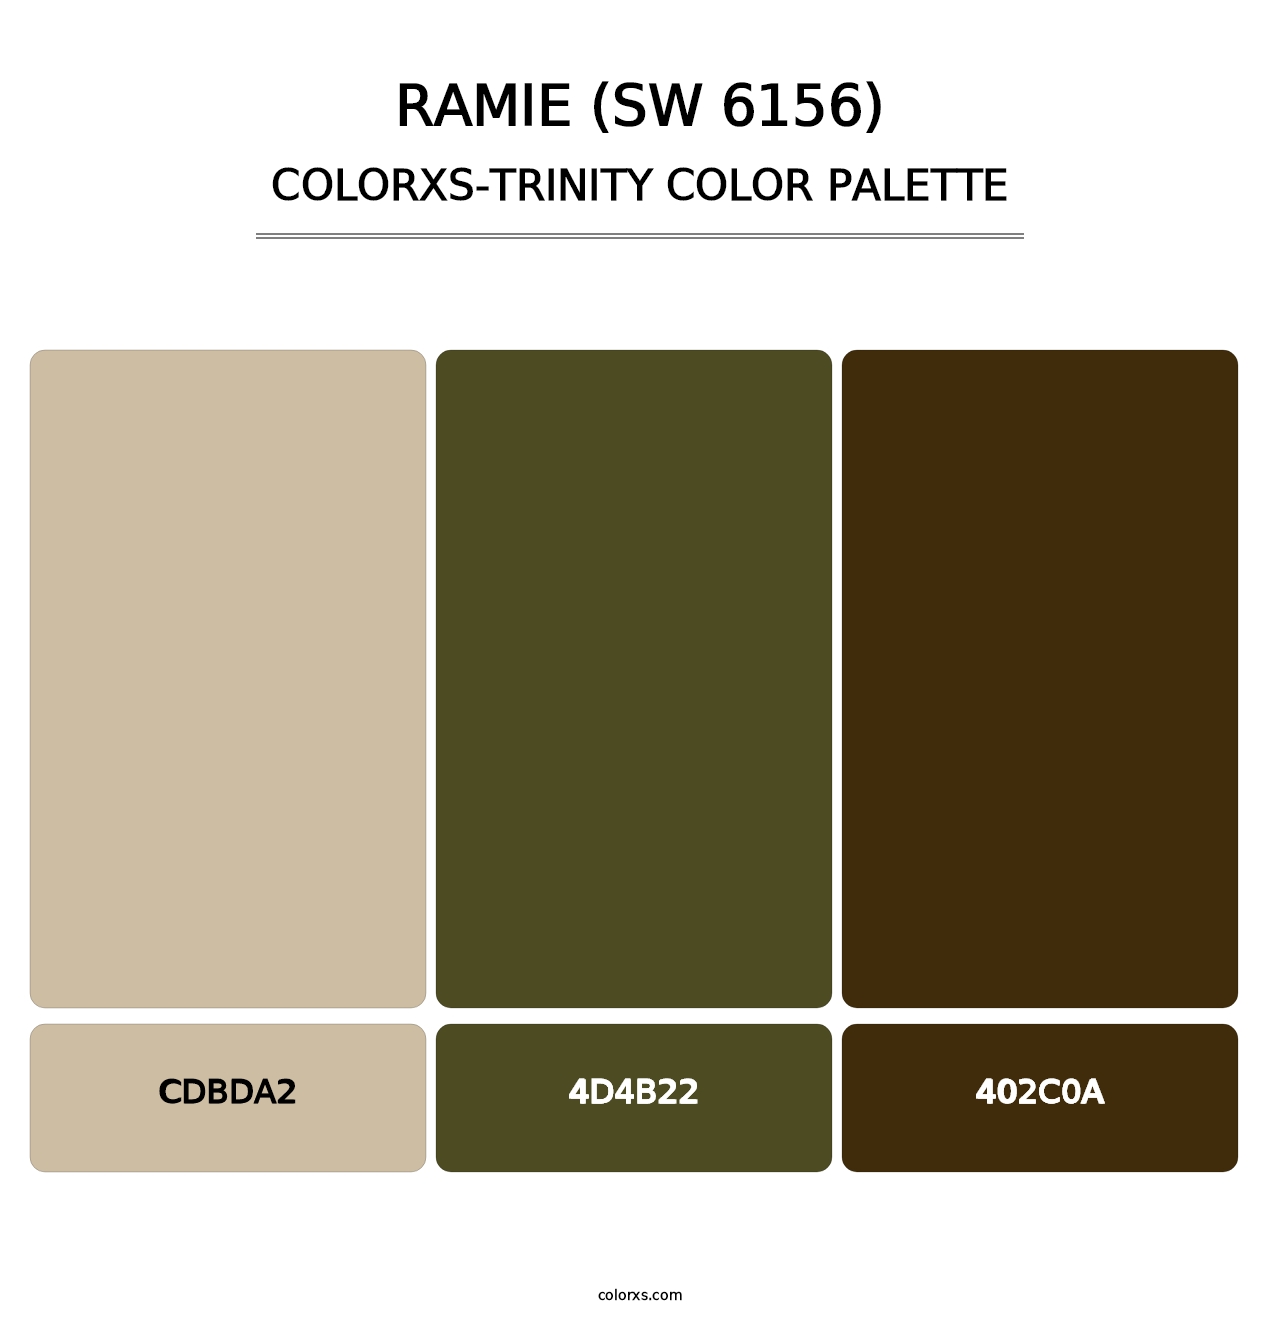 Ramie (SW 6156) - Colorxs Trinity Palette